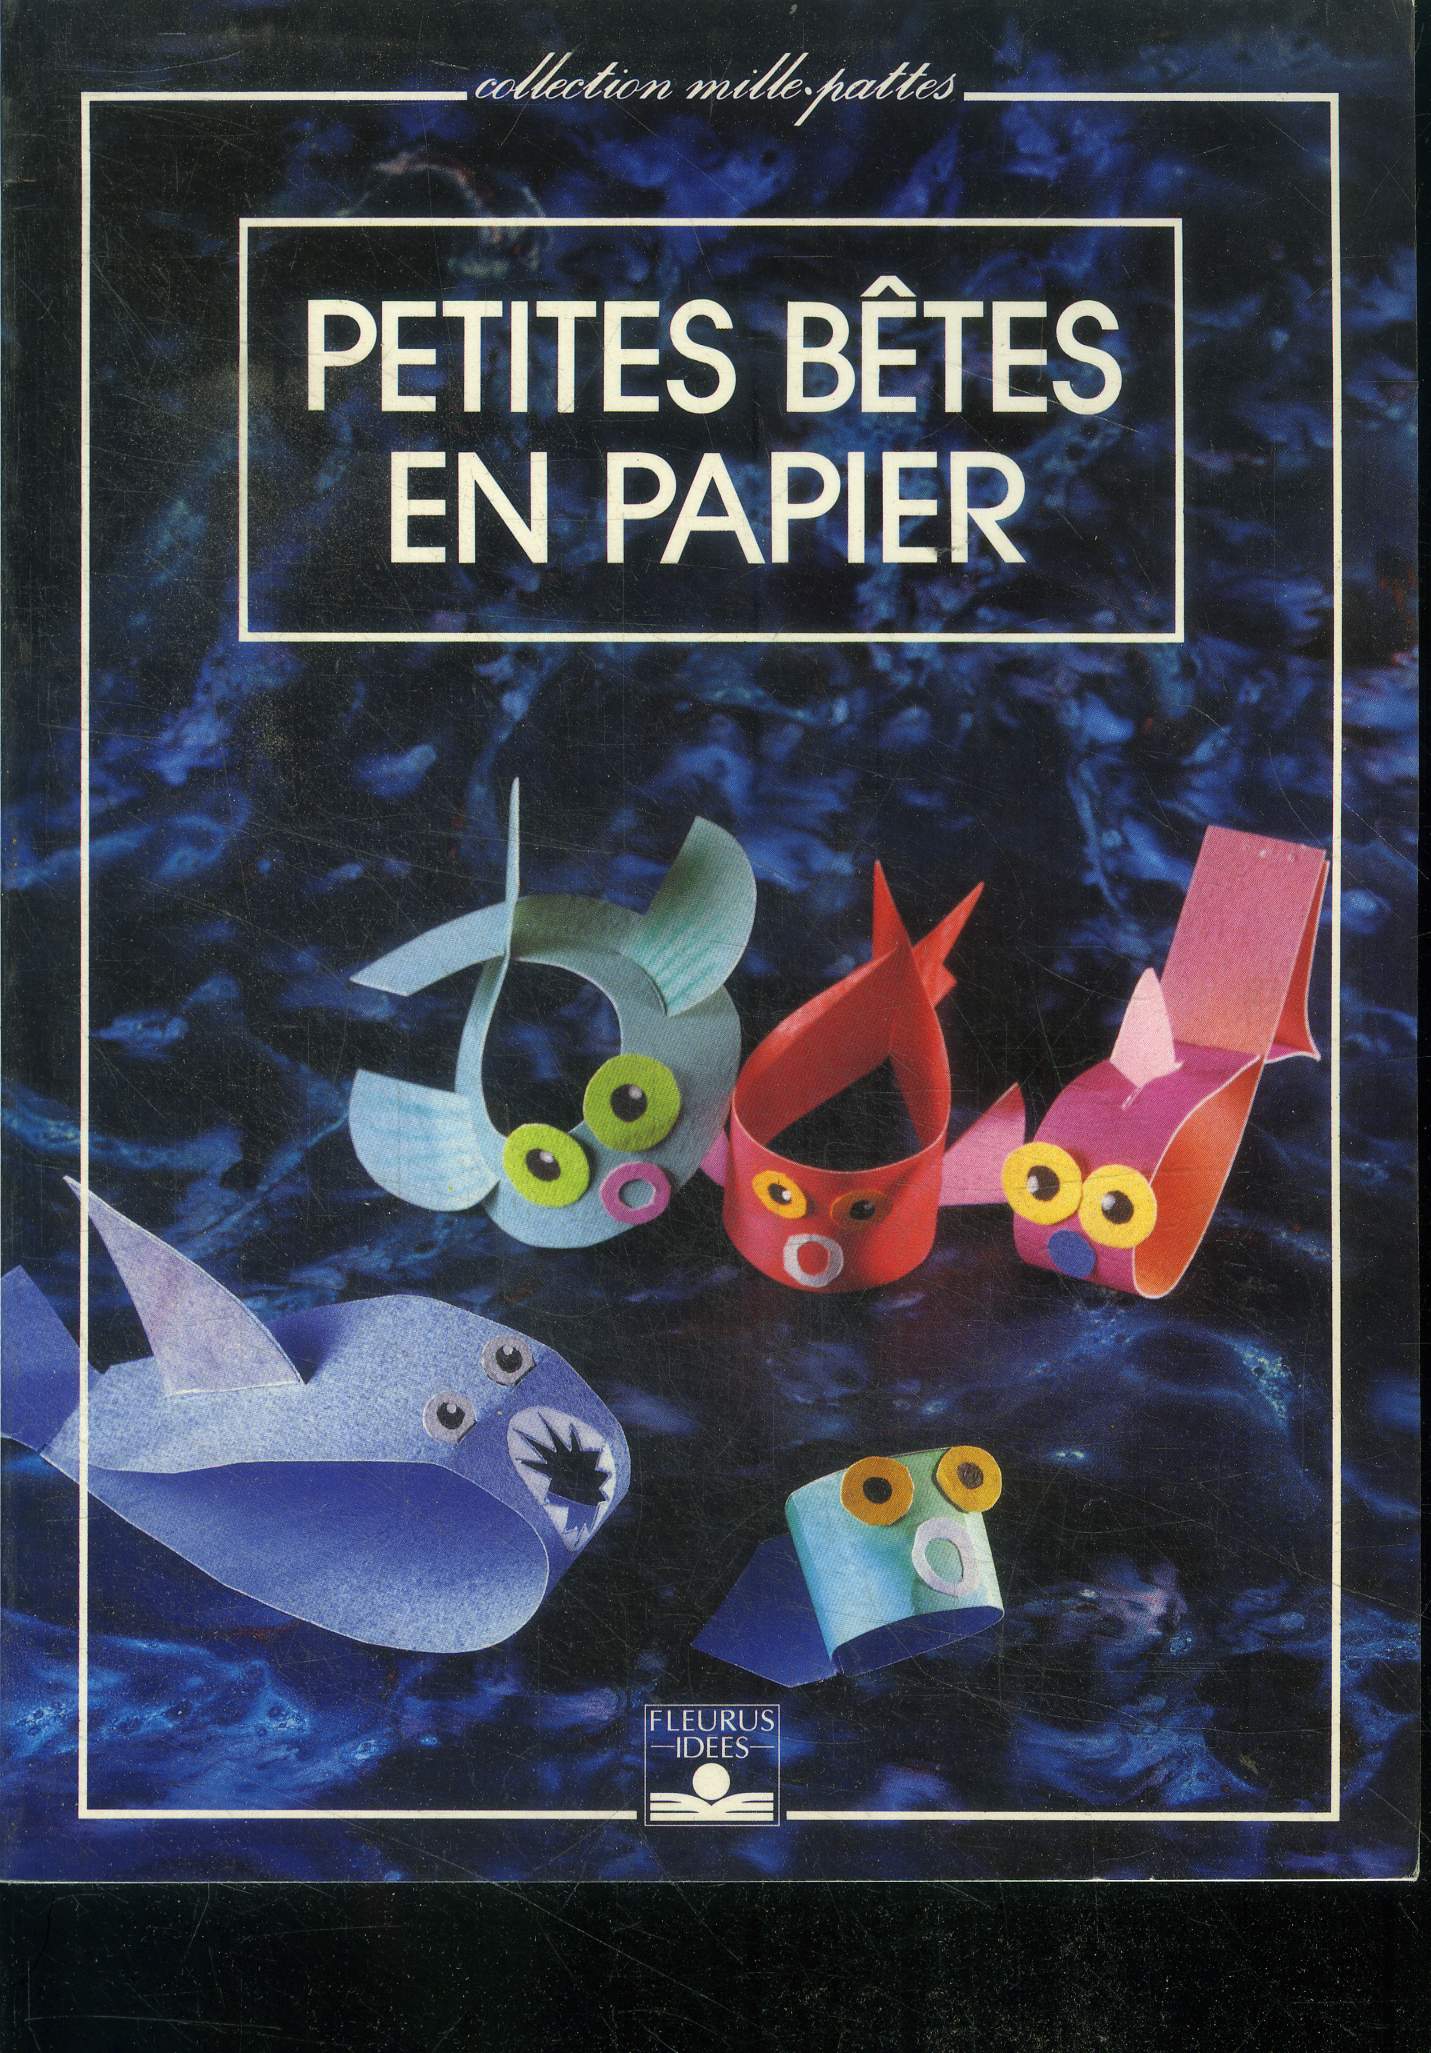 Petites betes en papier - collection mille pattes